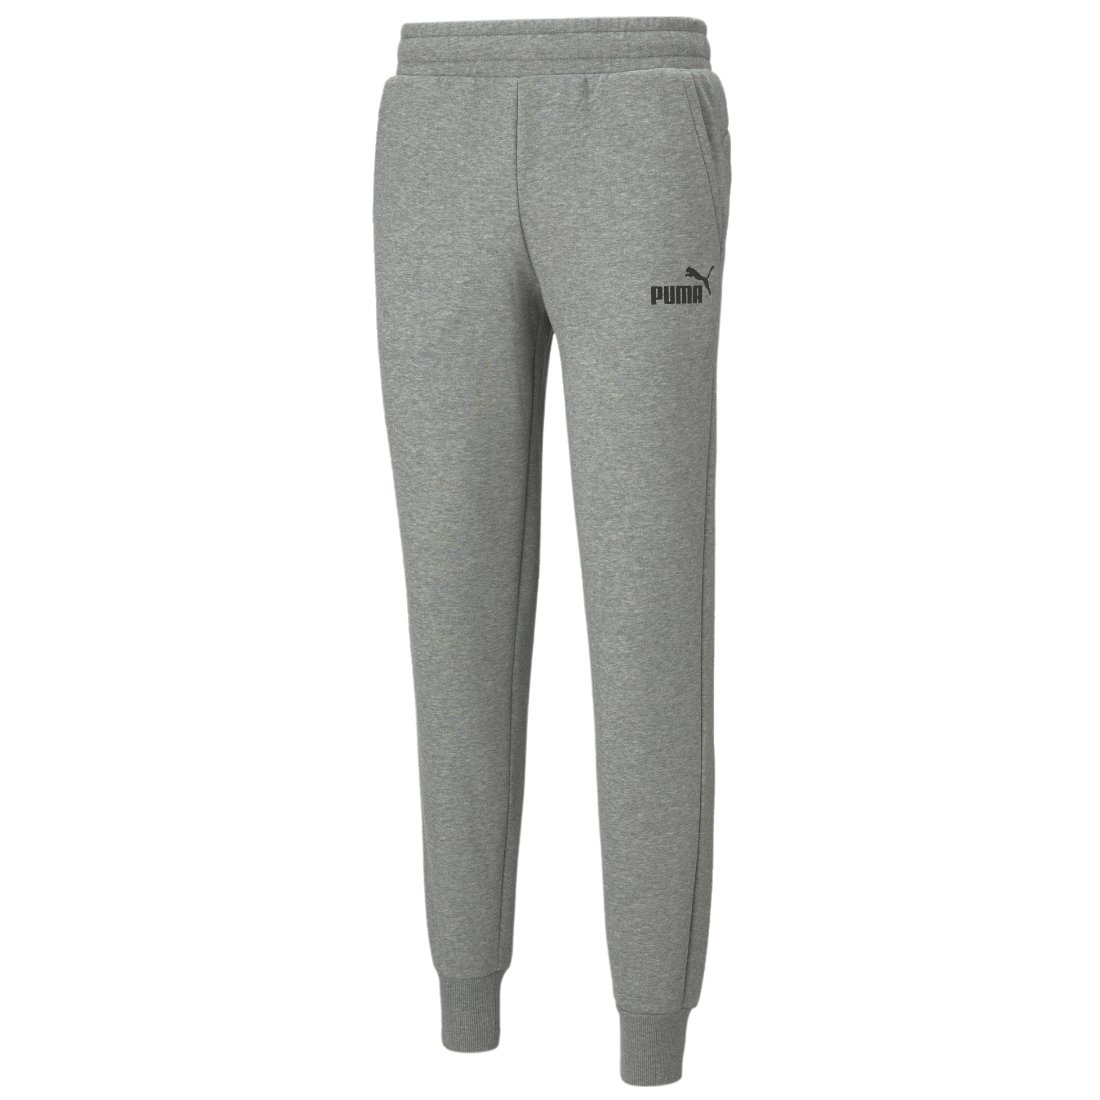 Puma, Spodnie męskie, Essentials Logo Pants, 586714-03, szare, rozmiar XXL